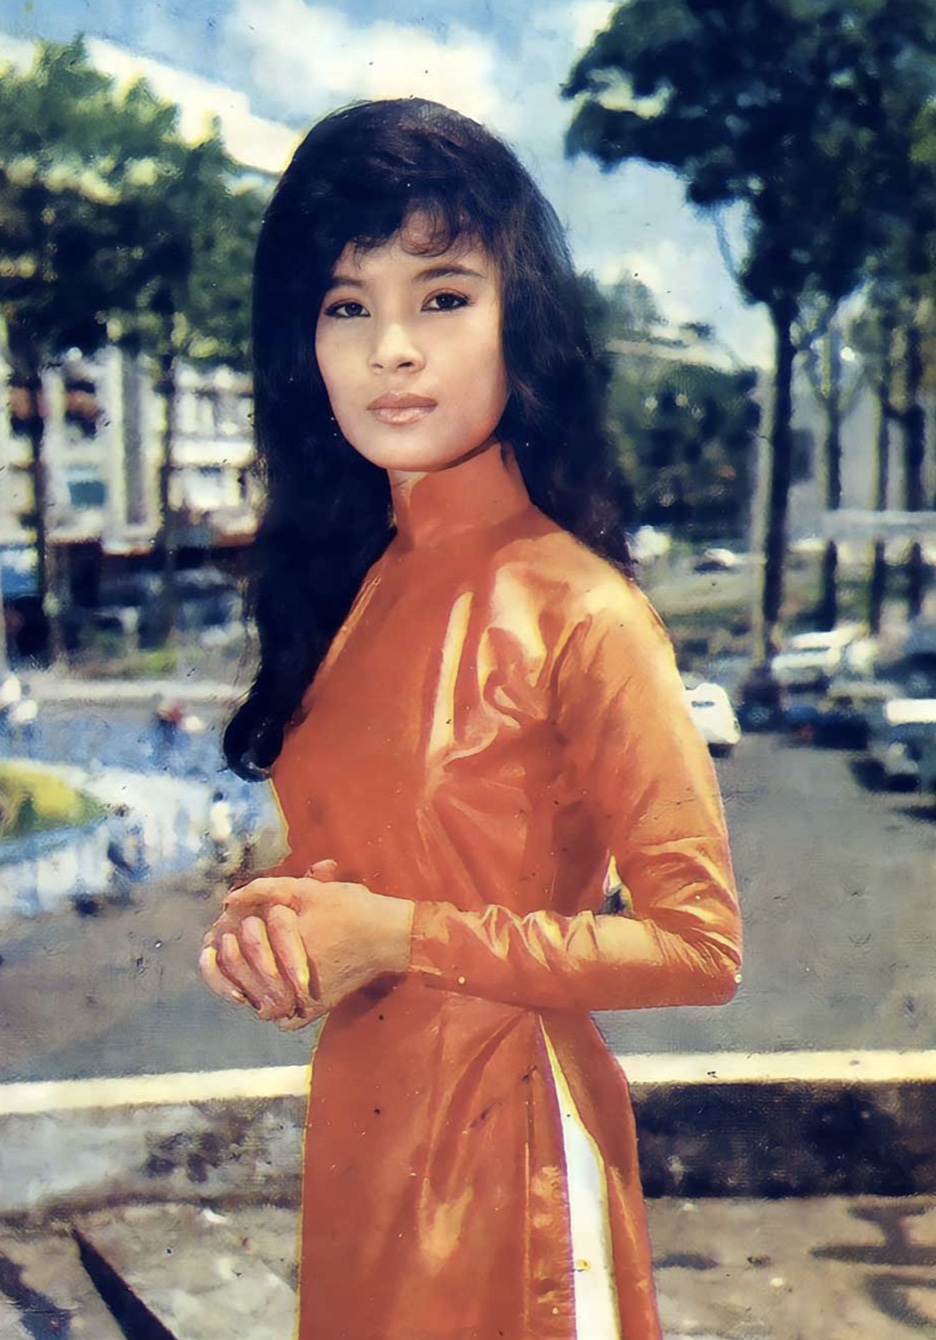 Nữ danh ca có nhan sắc trời ban, từng được mệnh danh là "hoa hậu nghệ sĩ" thập niên 60- Ảnh 2.